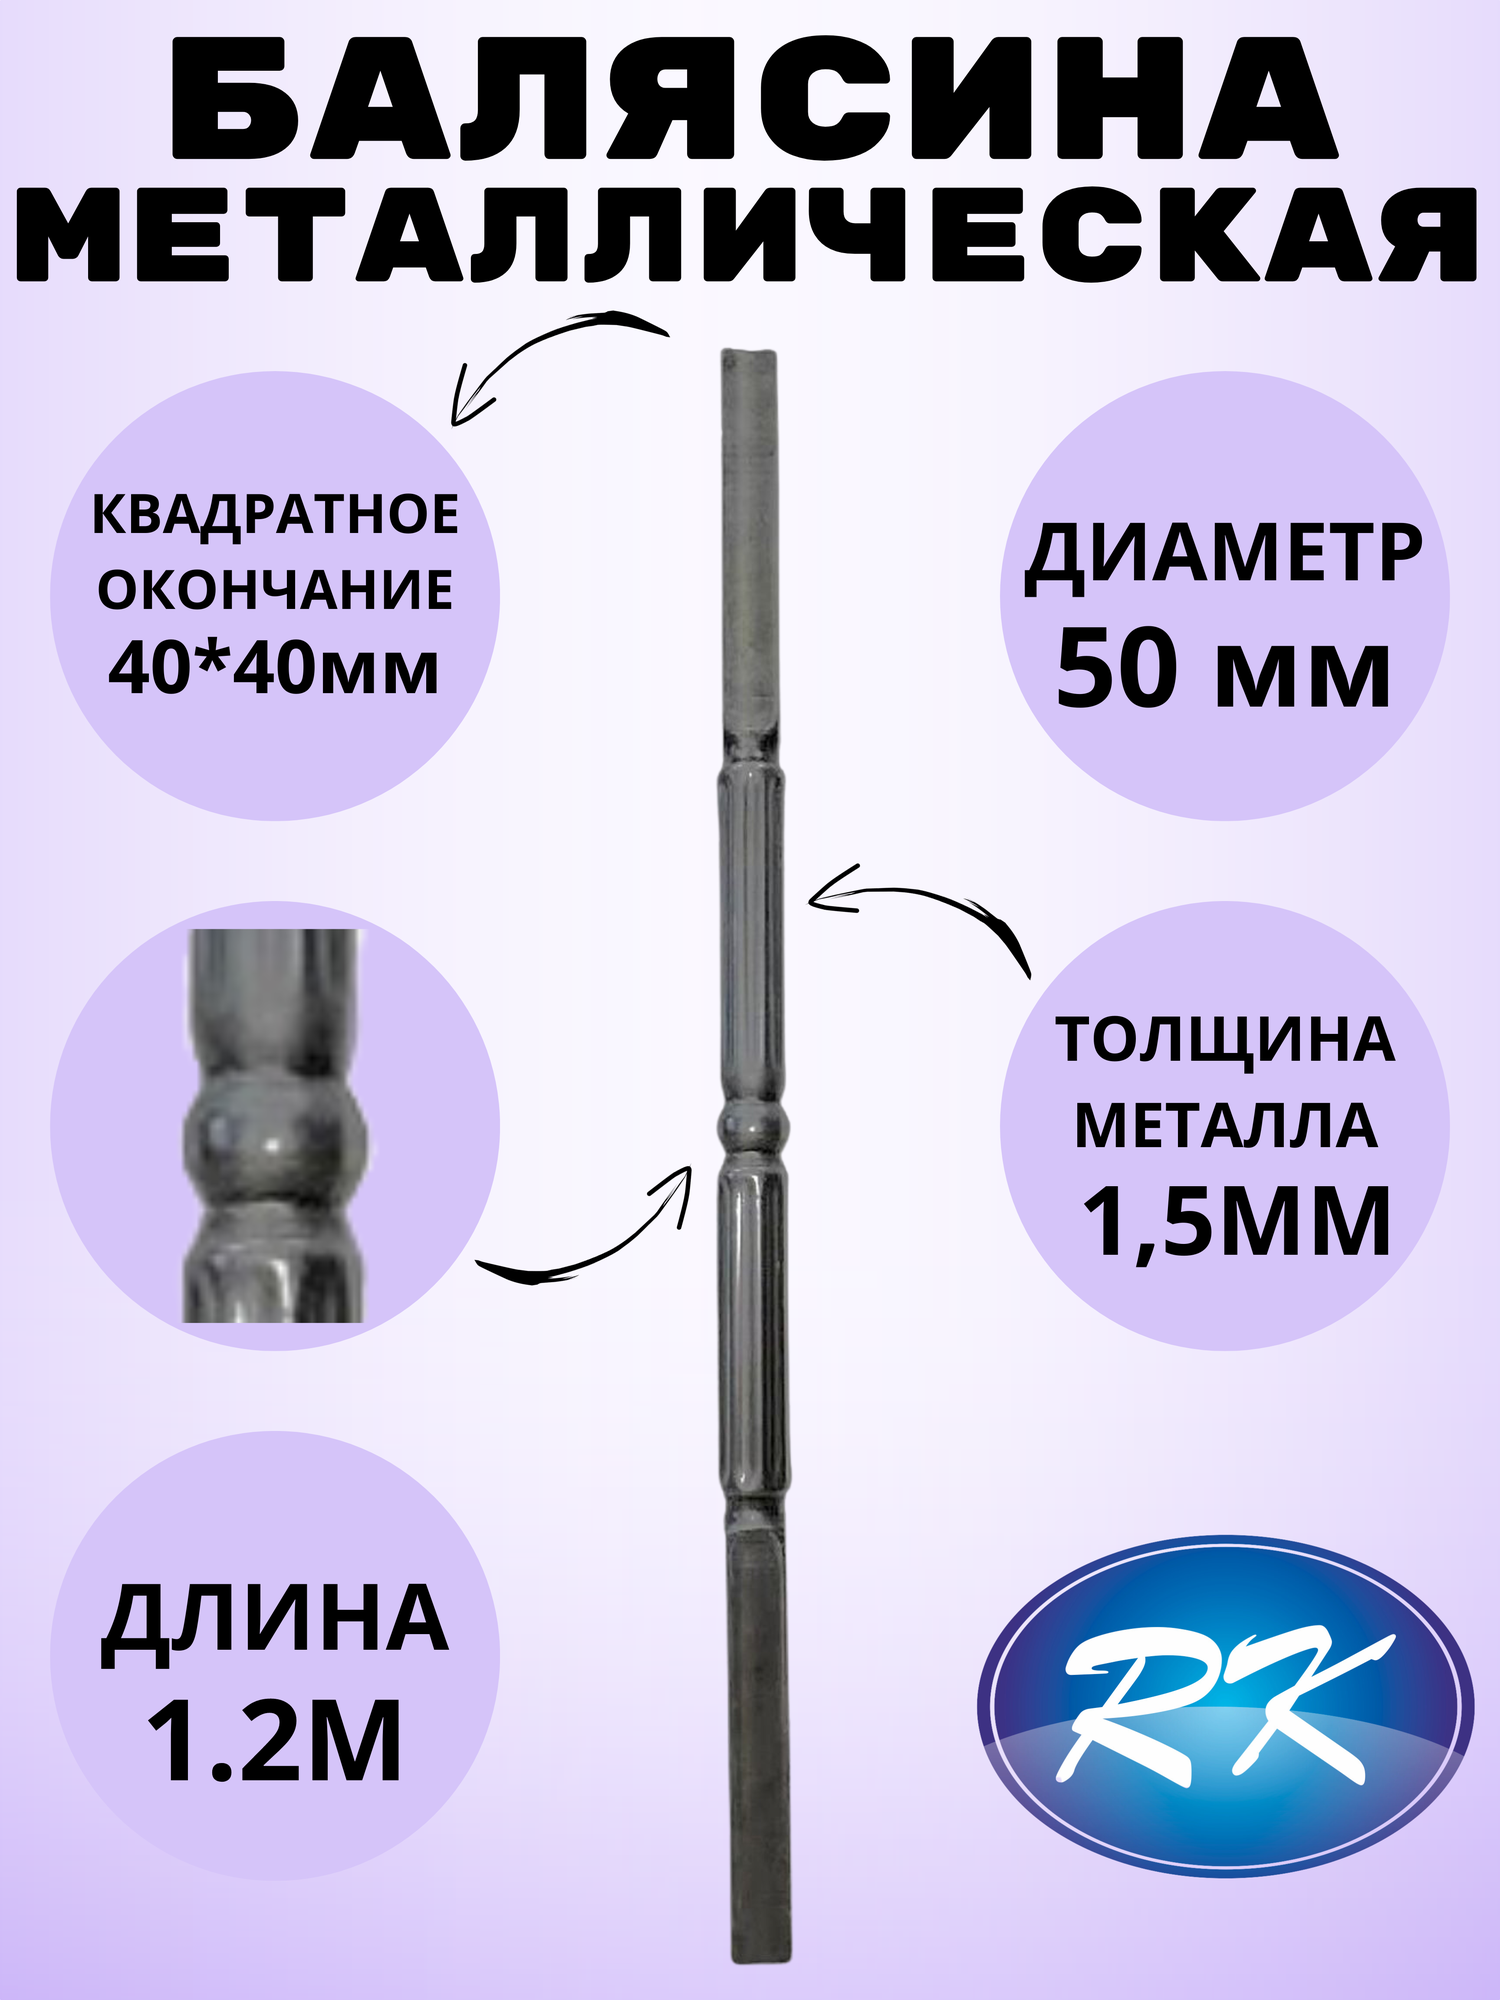 Балясина кованая металлическая Royal Kovka диаметр 50 мм квадратные окончания 40х40 мм арт. 40*40.3 КА. КВ-1.2м